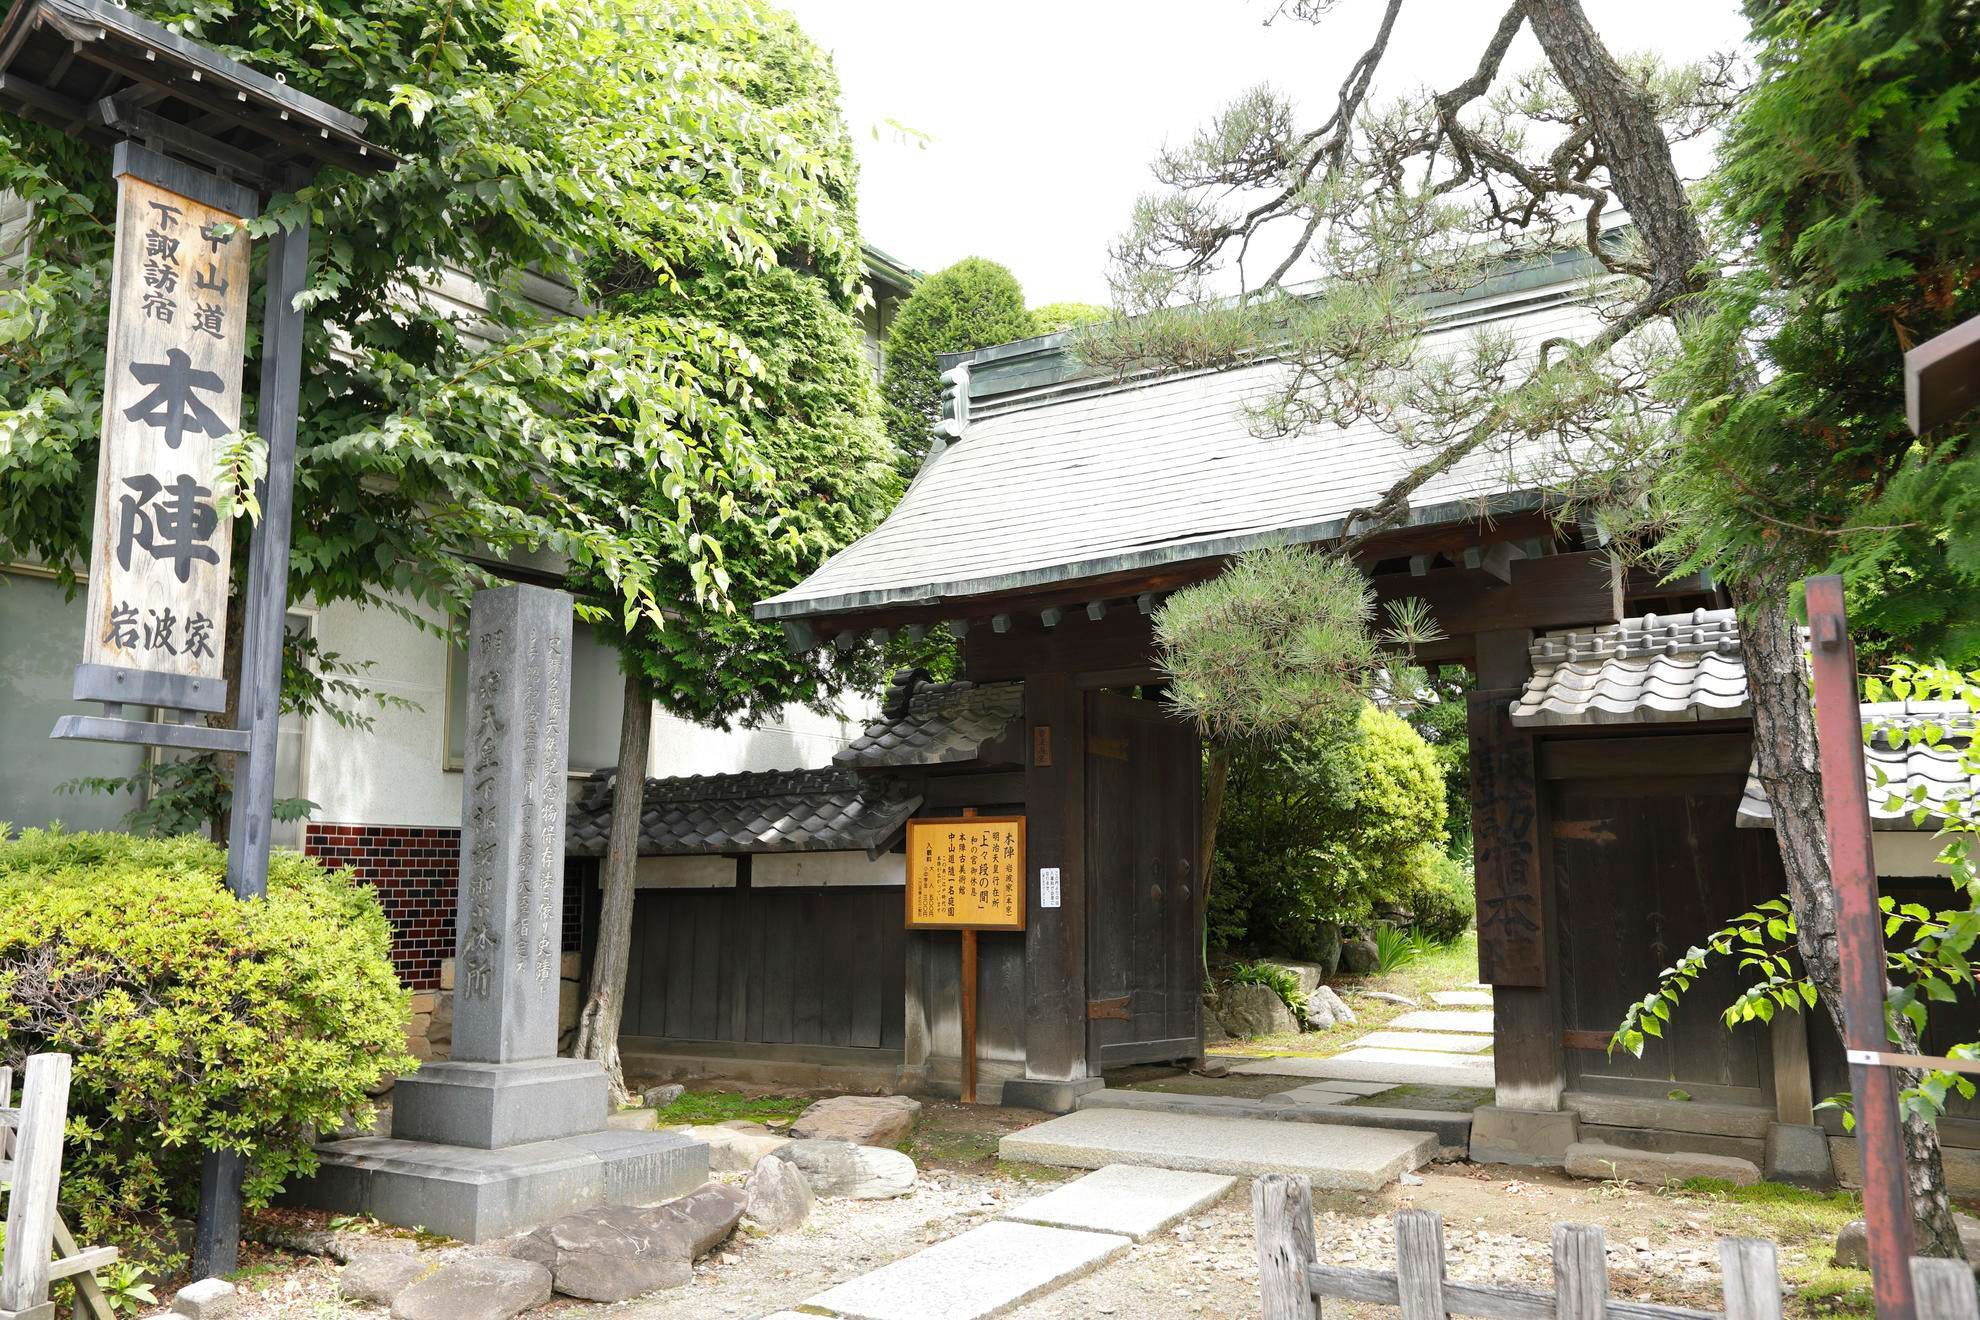 中山道下諏訪宿　本陣 岩波家　Honjin Iwanami House in Shimosuwa Post Station on Nakasendo Road